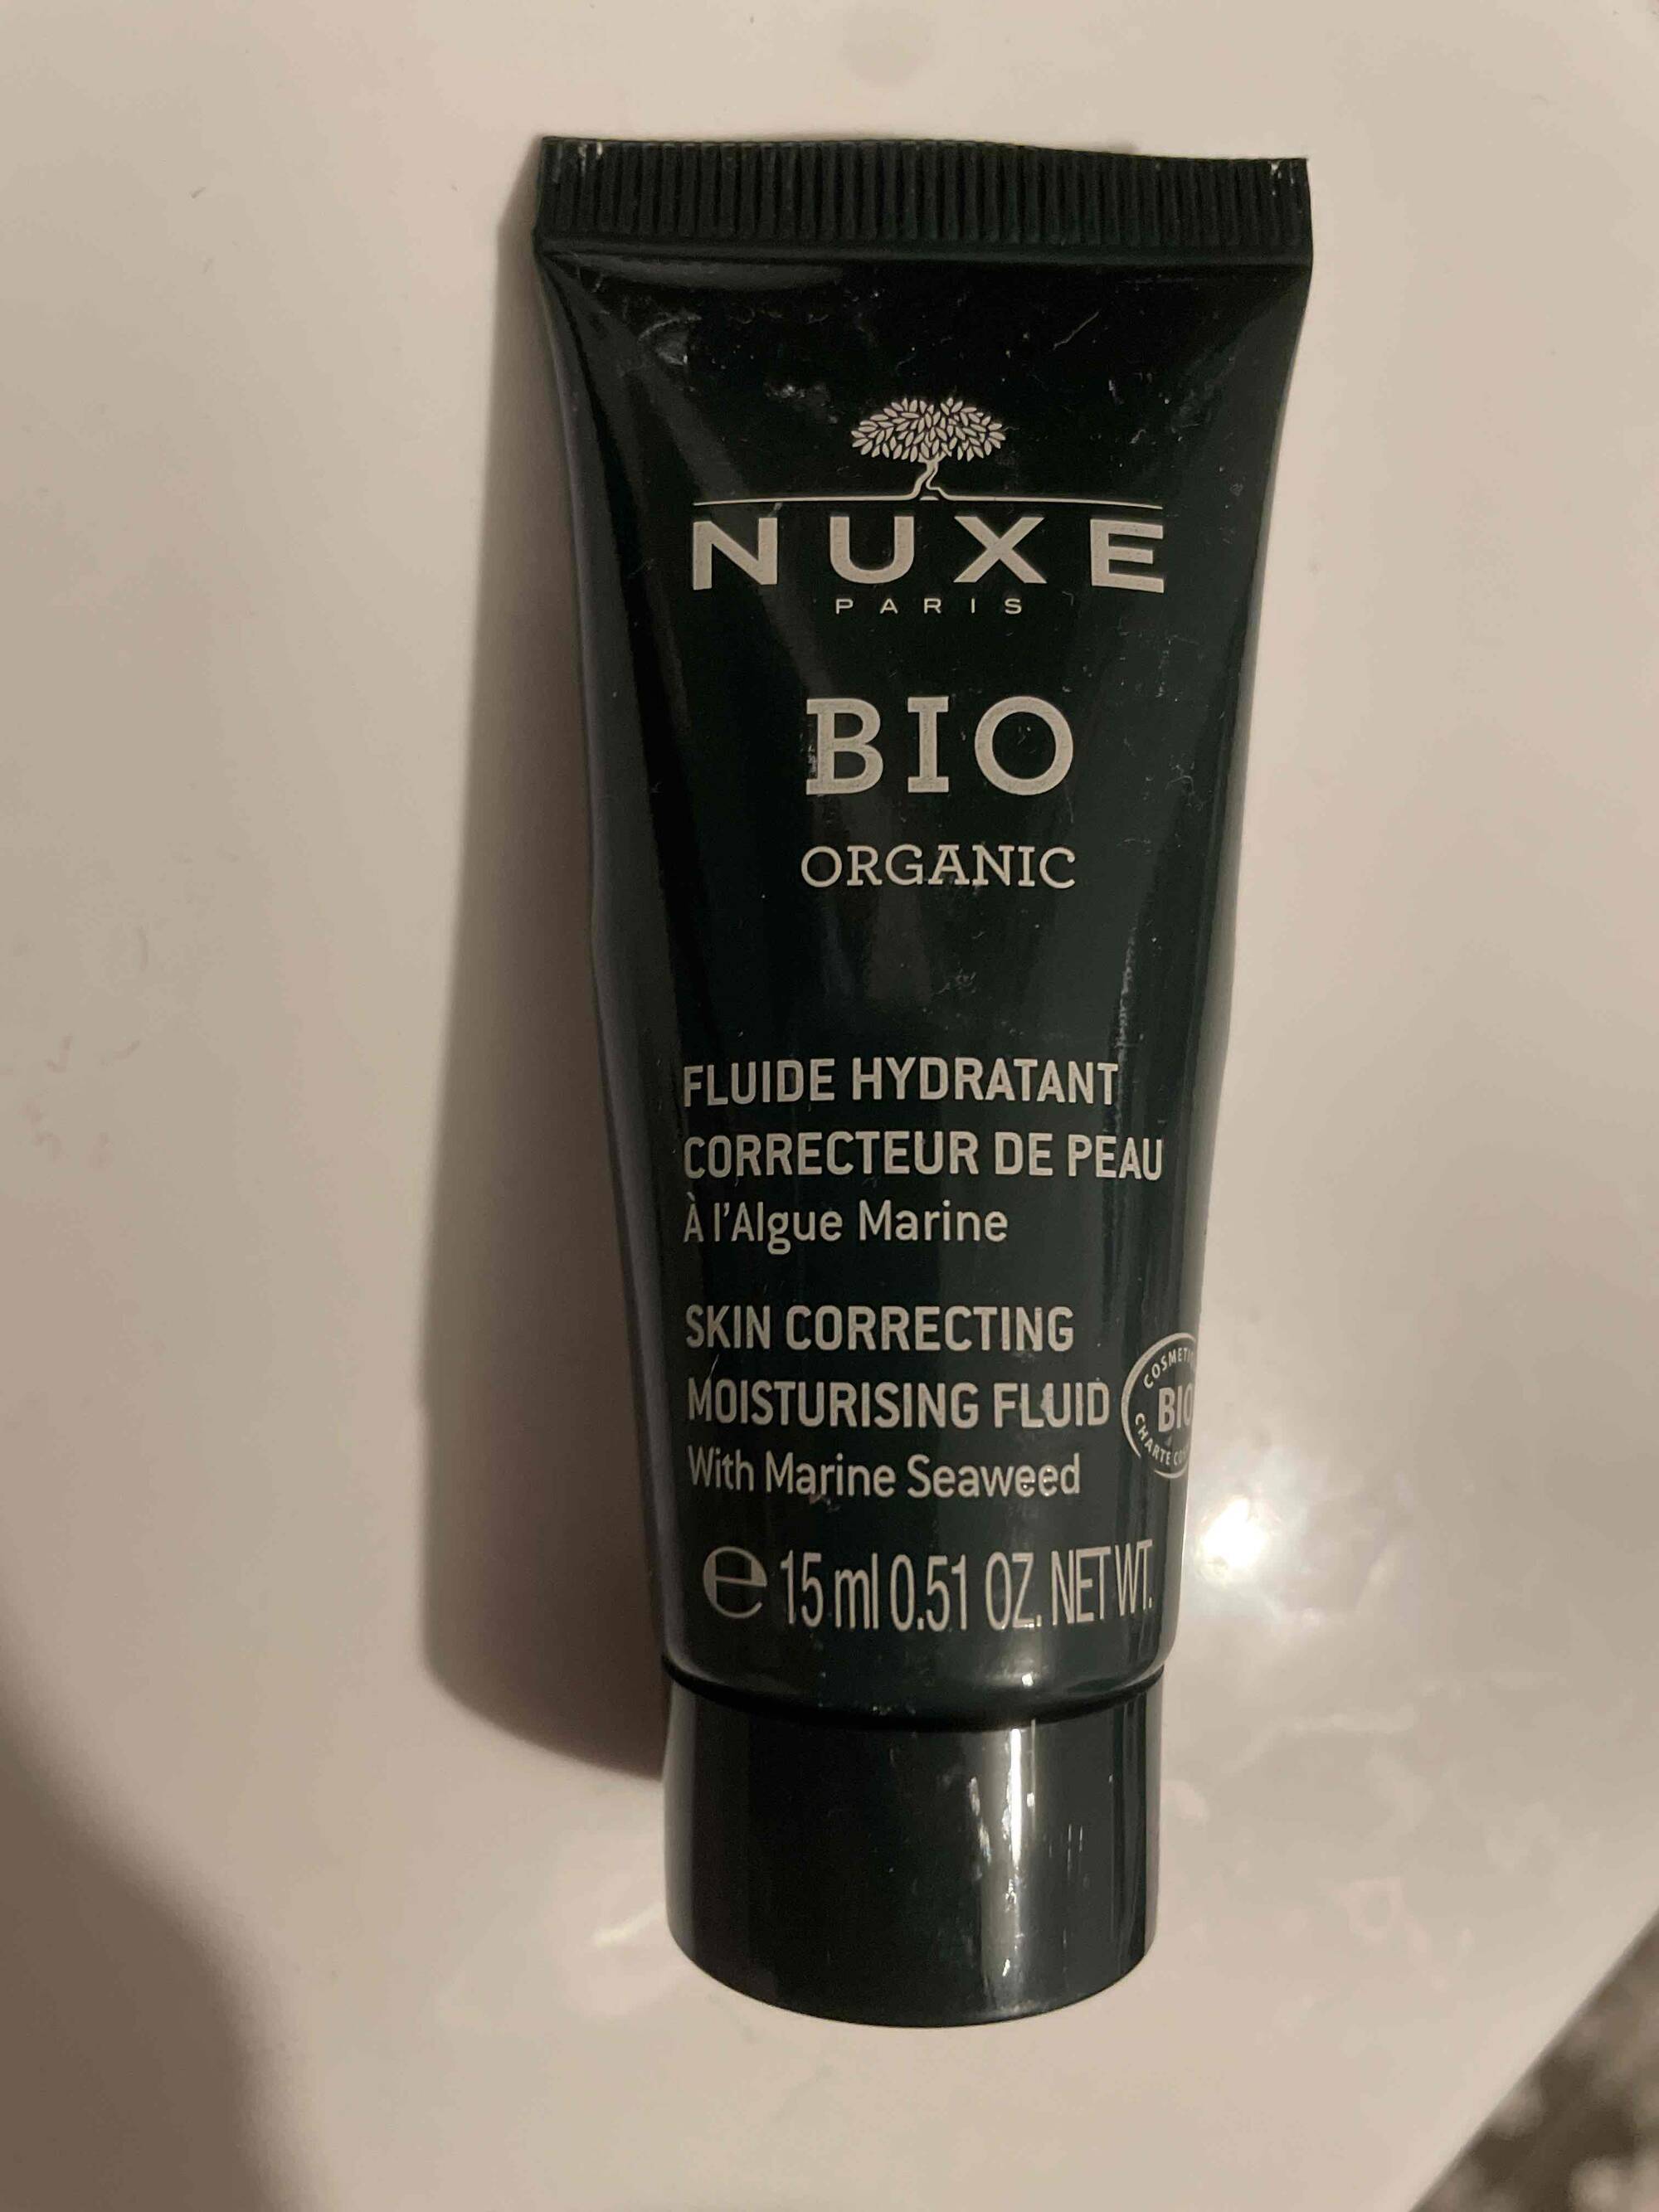 NUXE - Fluide hydratant - Correcteur de peau 